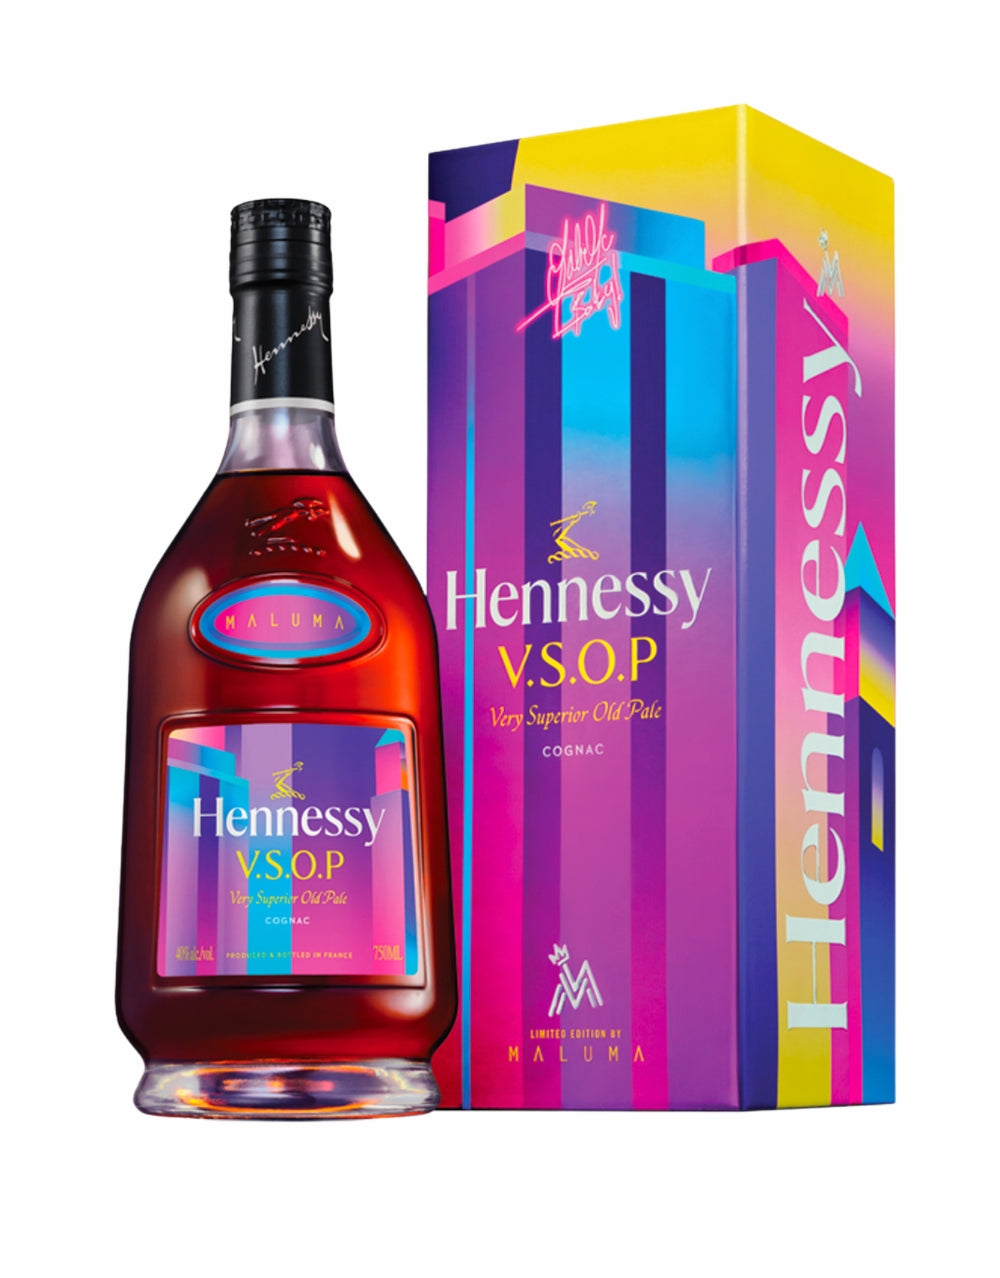 Hennessy V.S.O.P Limited Edition by Maluma